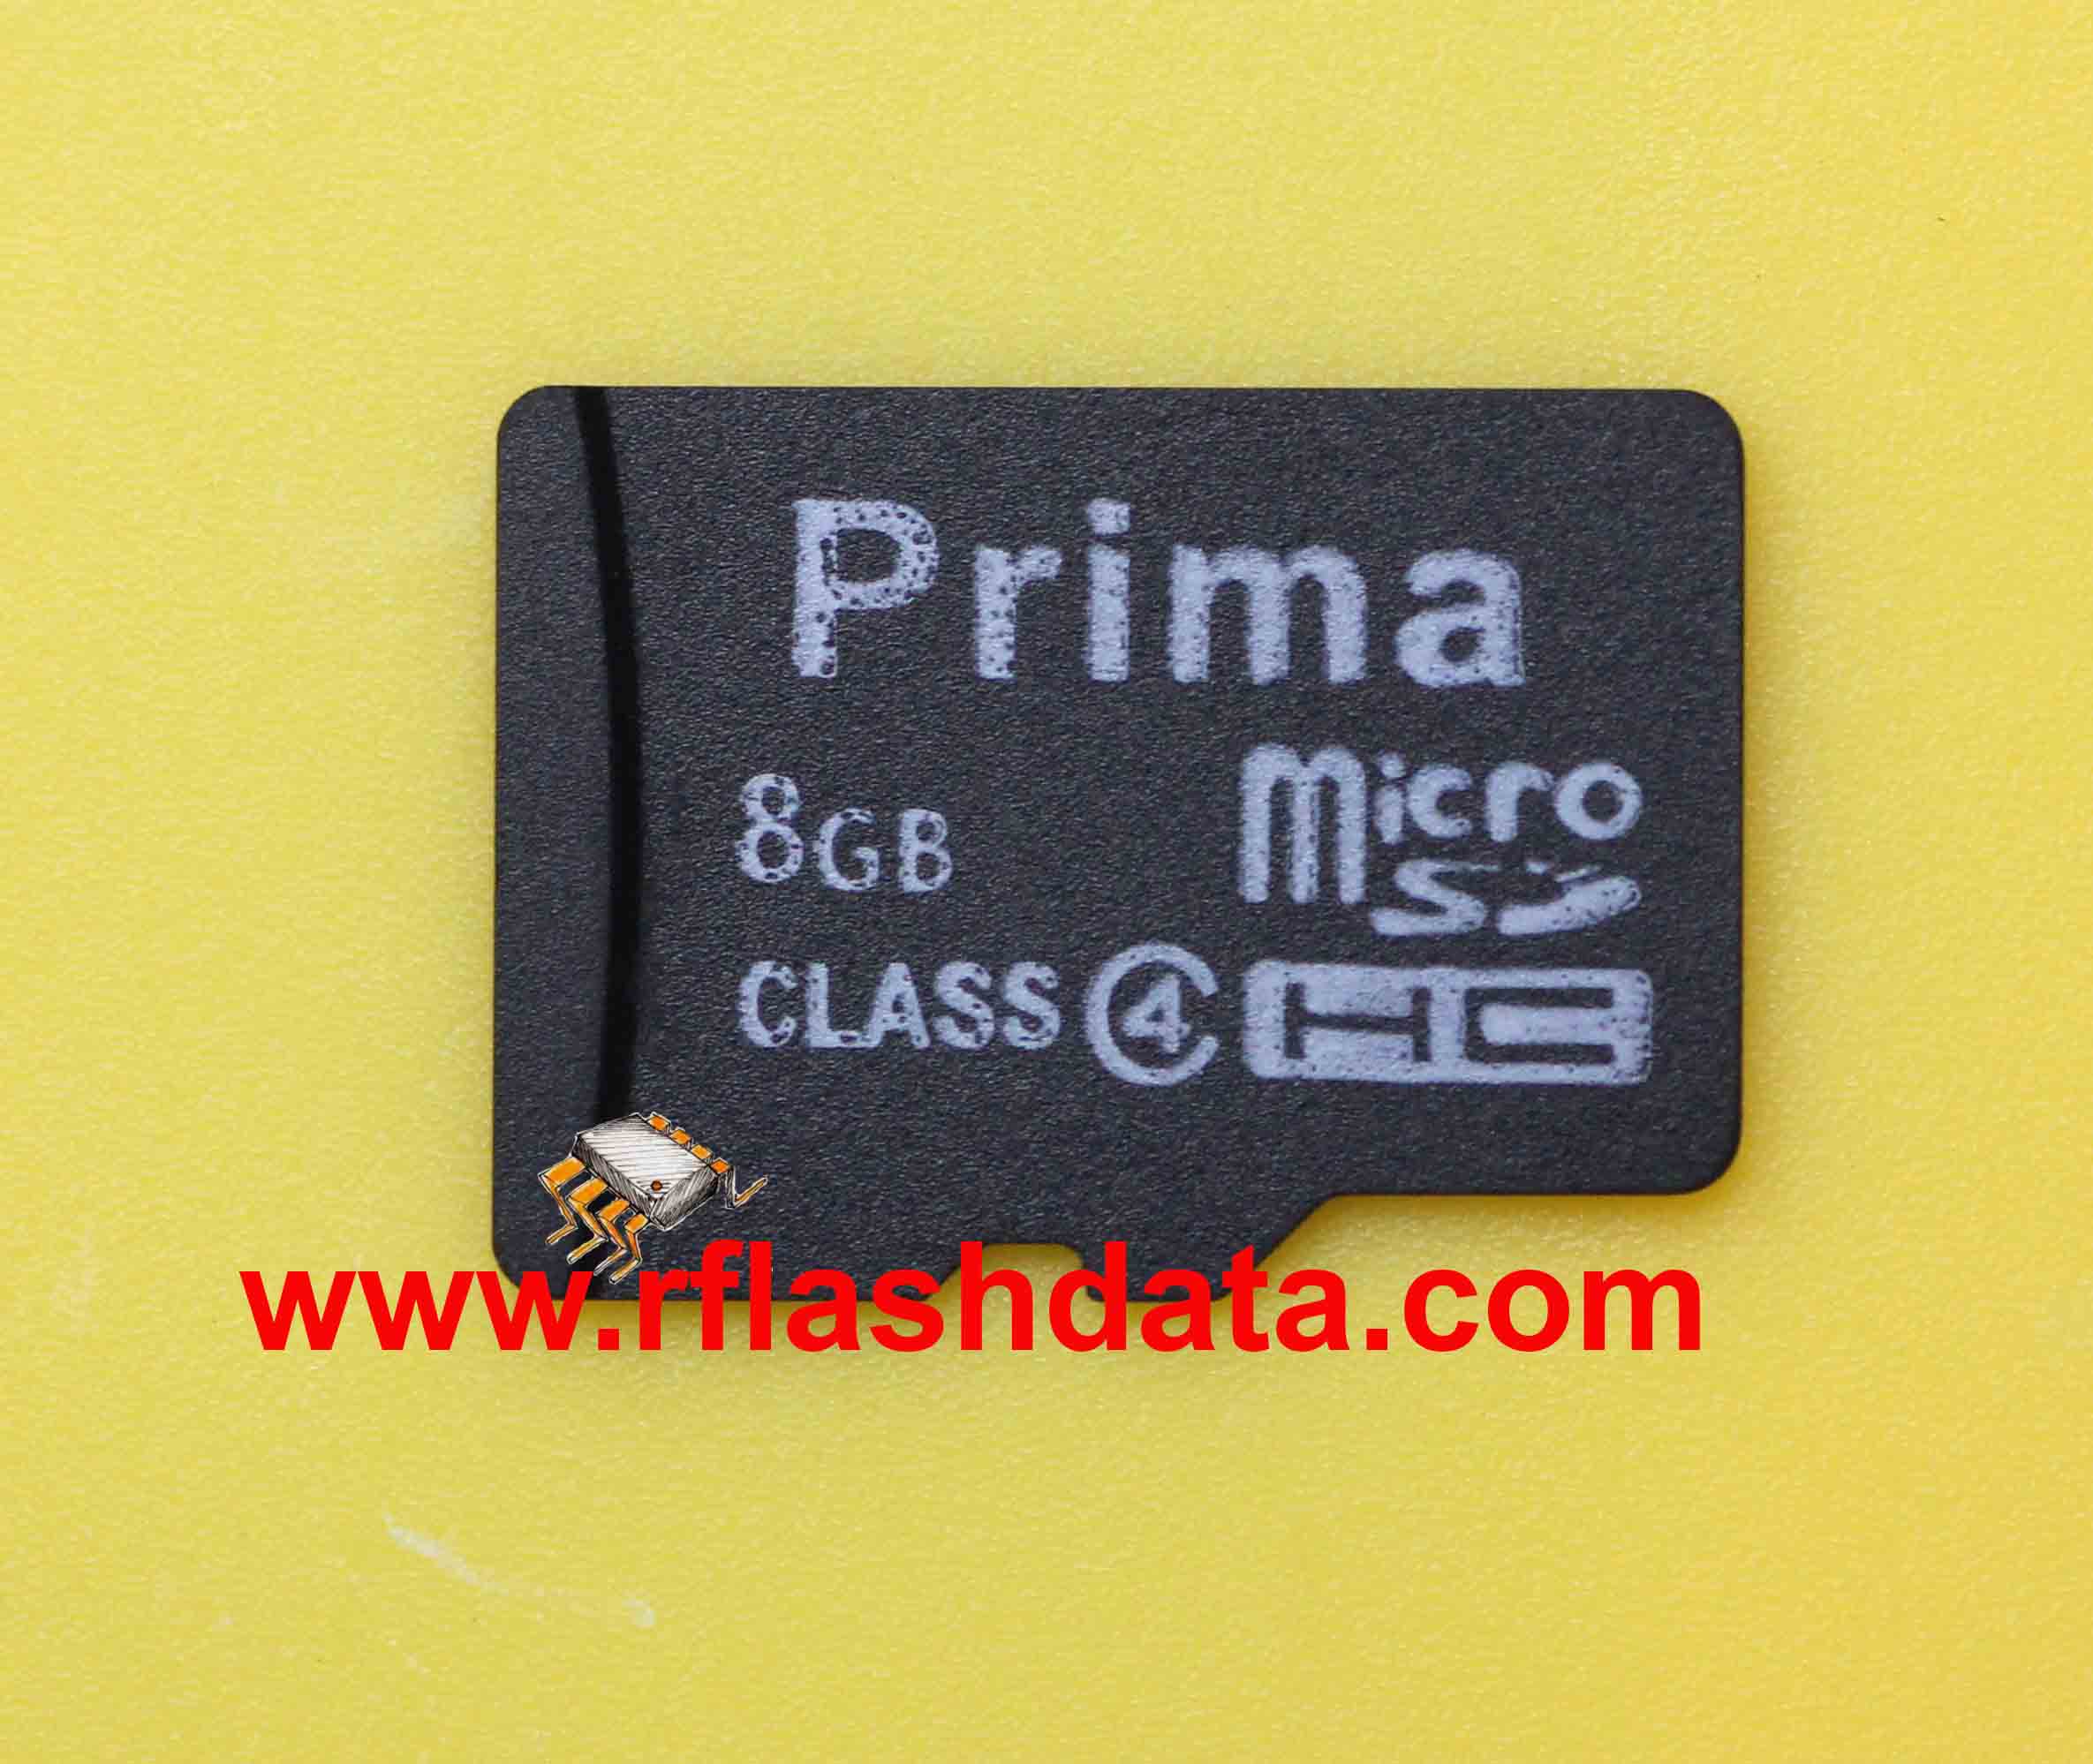 Prima microSD card